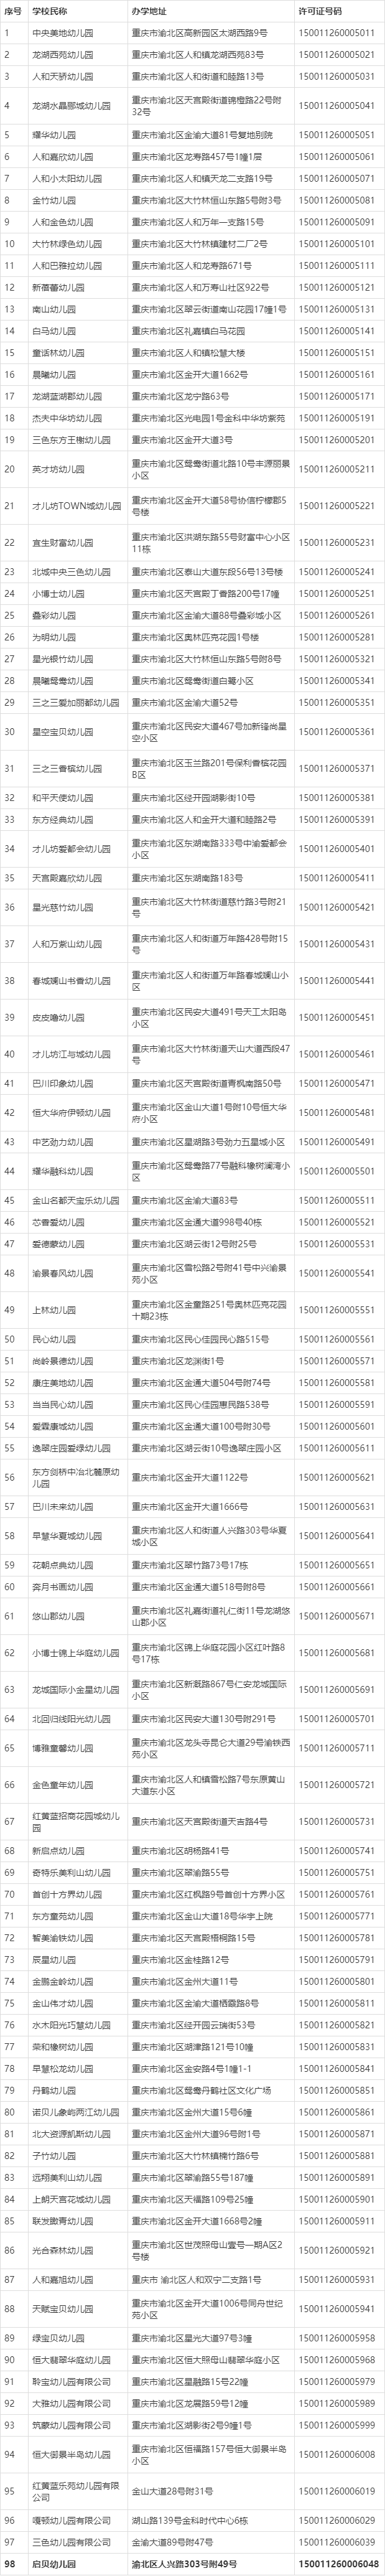 重庆两江新区民办幼儿园统计(98所)